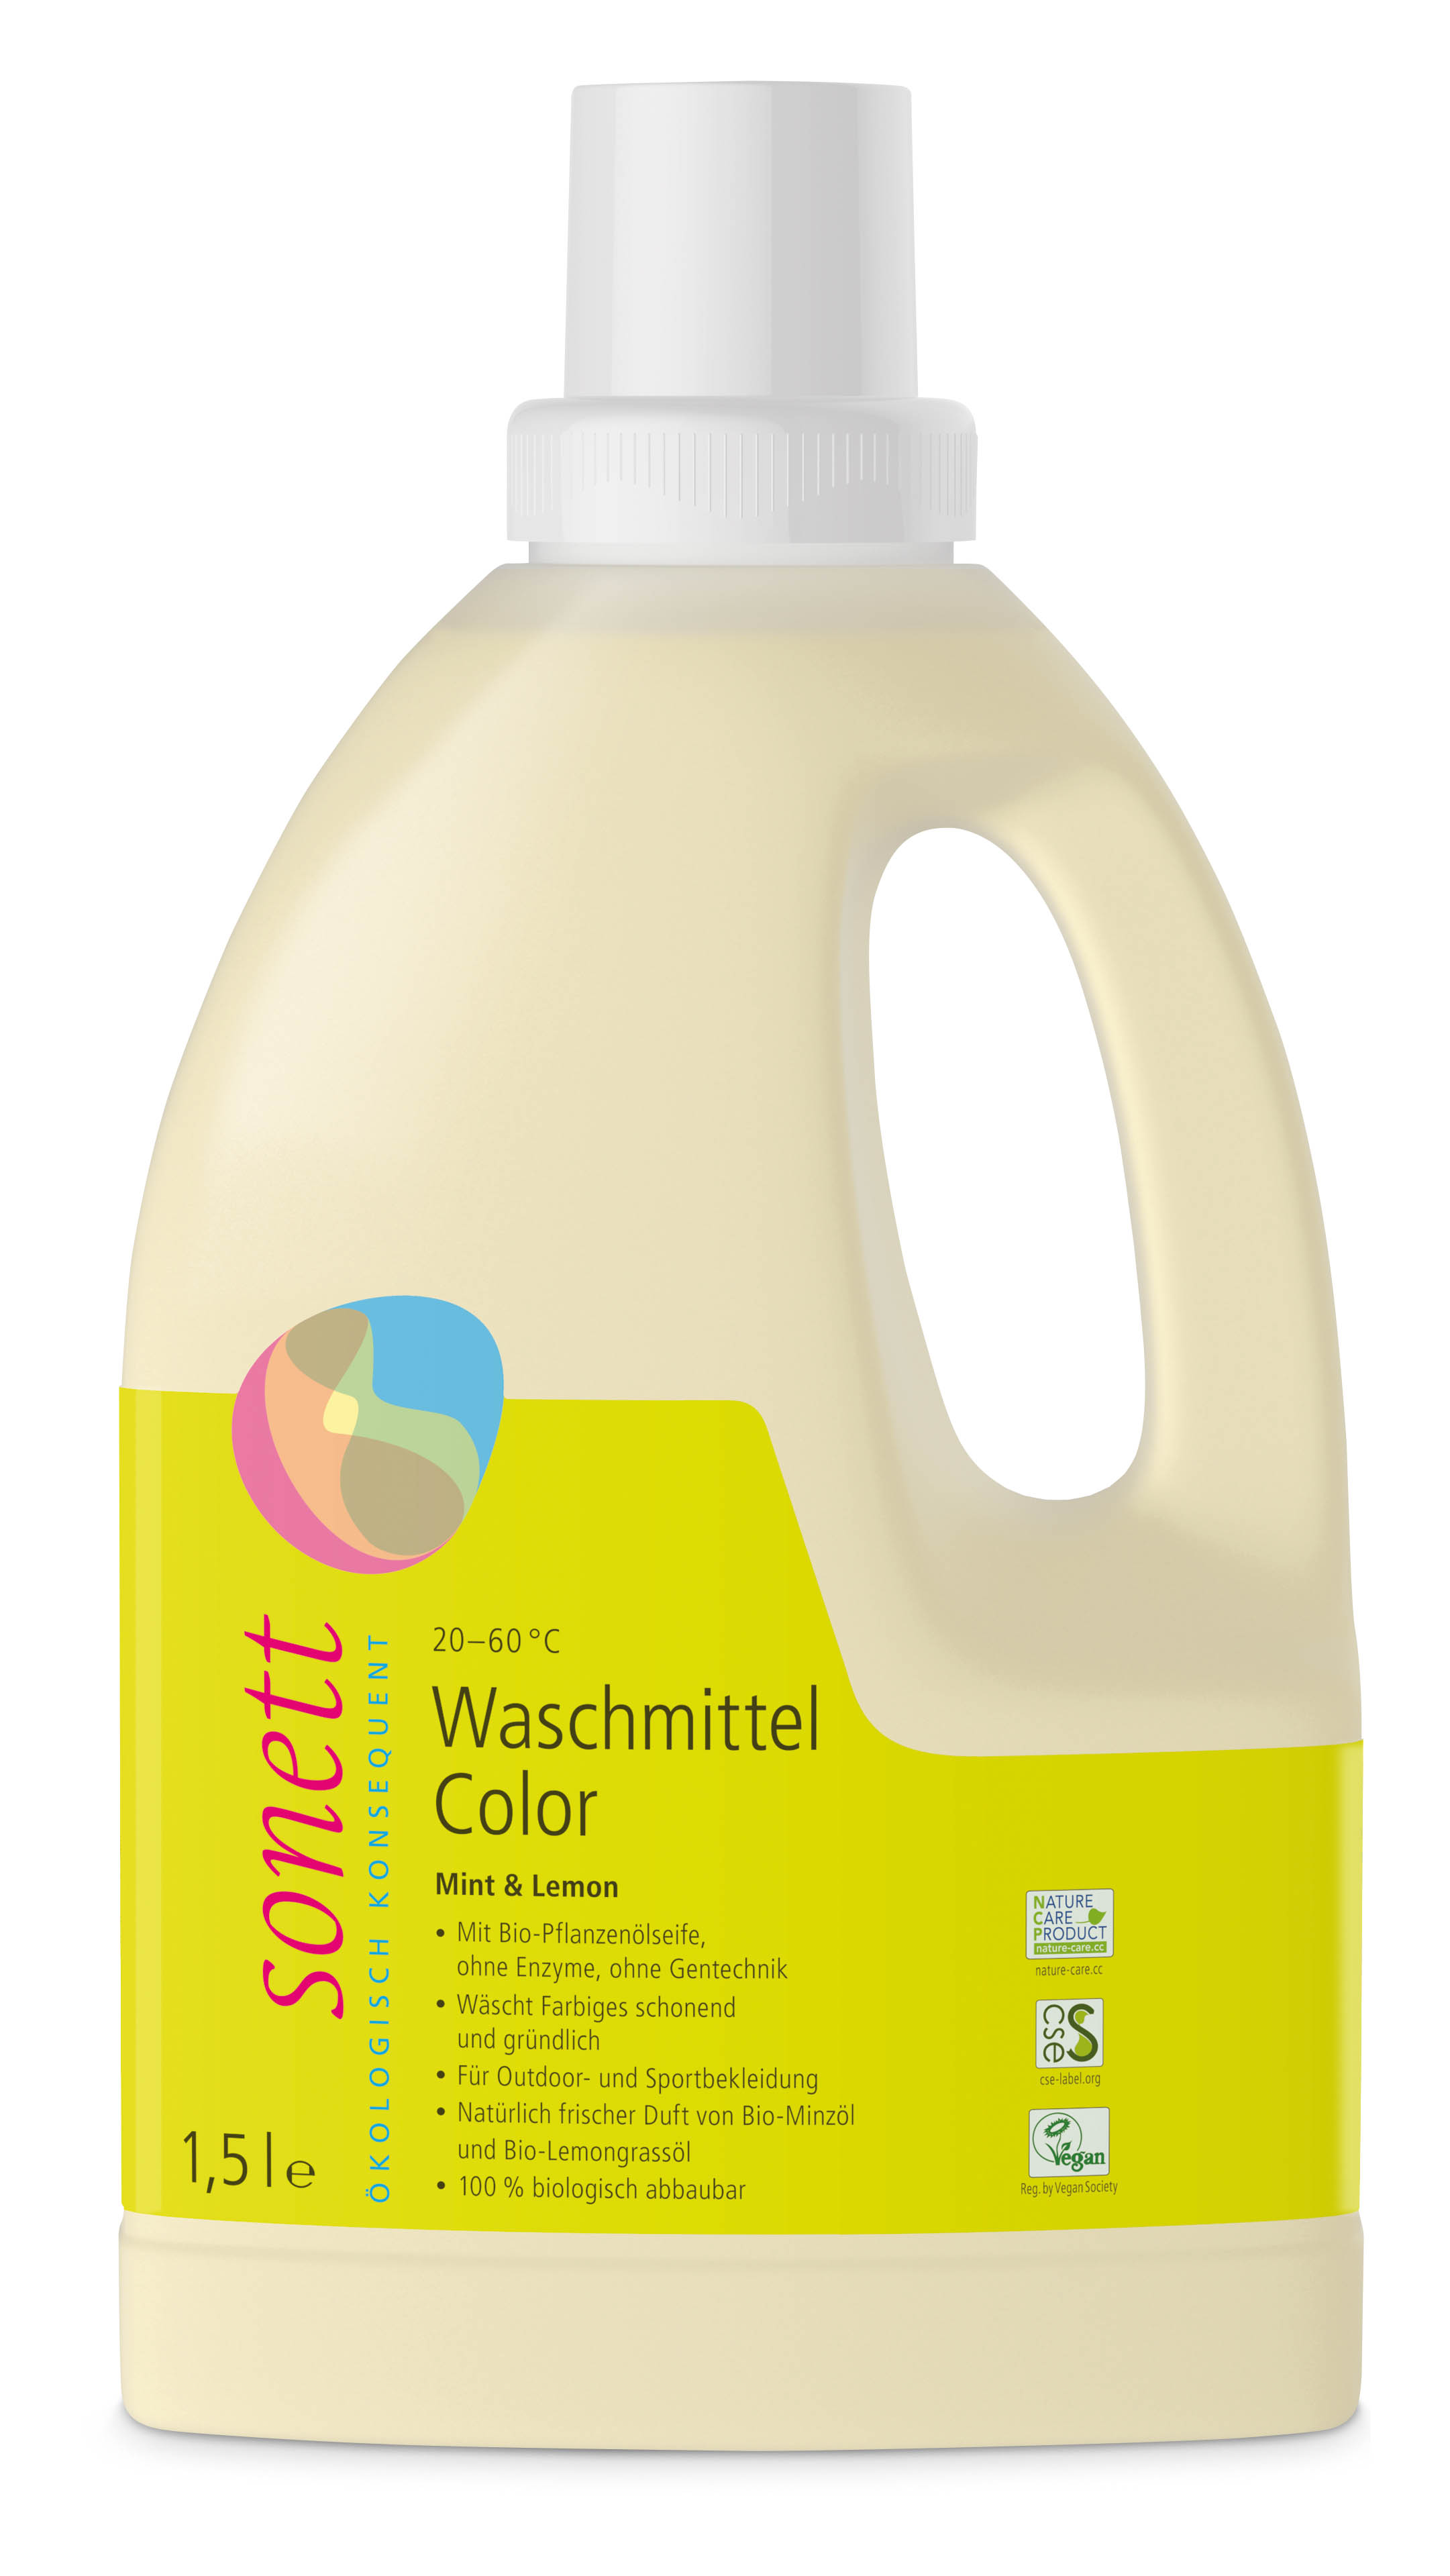 Sonett Waschmittel Color Mint & Lemon 1,5l